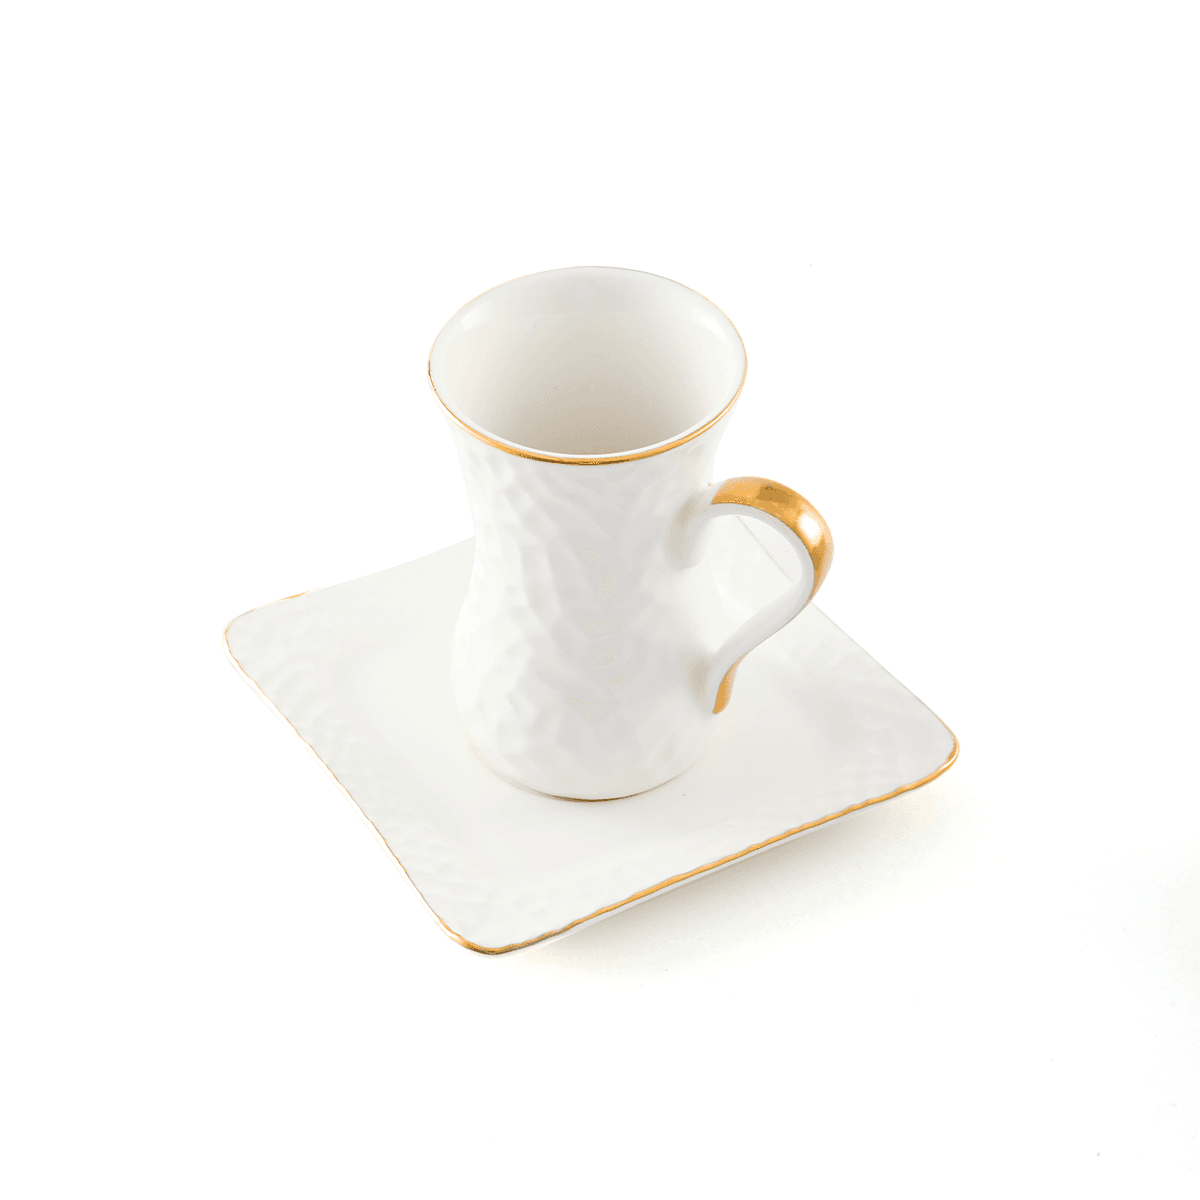 فناجين الشاي بورسلان 12 قطعة البيضاء والذهبية اللون ديكوبور Decopor Porcelain 12 Piece Tea Cup and Saucer Set 100 ml White Gold Porcelain